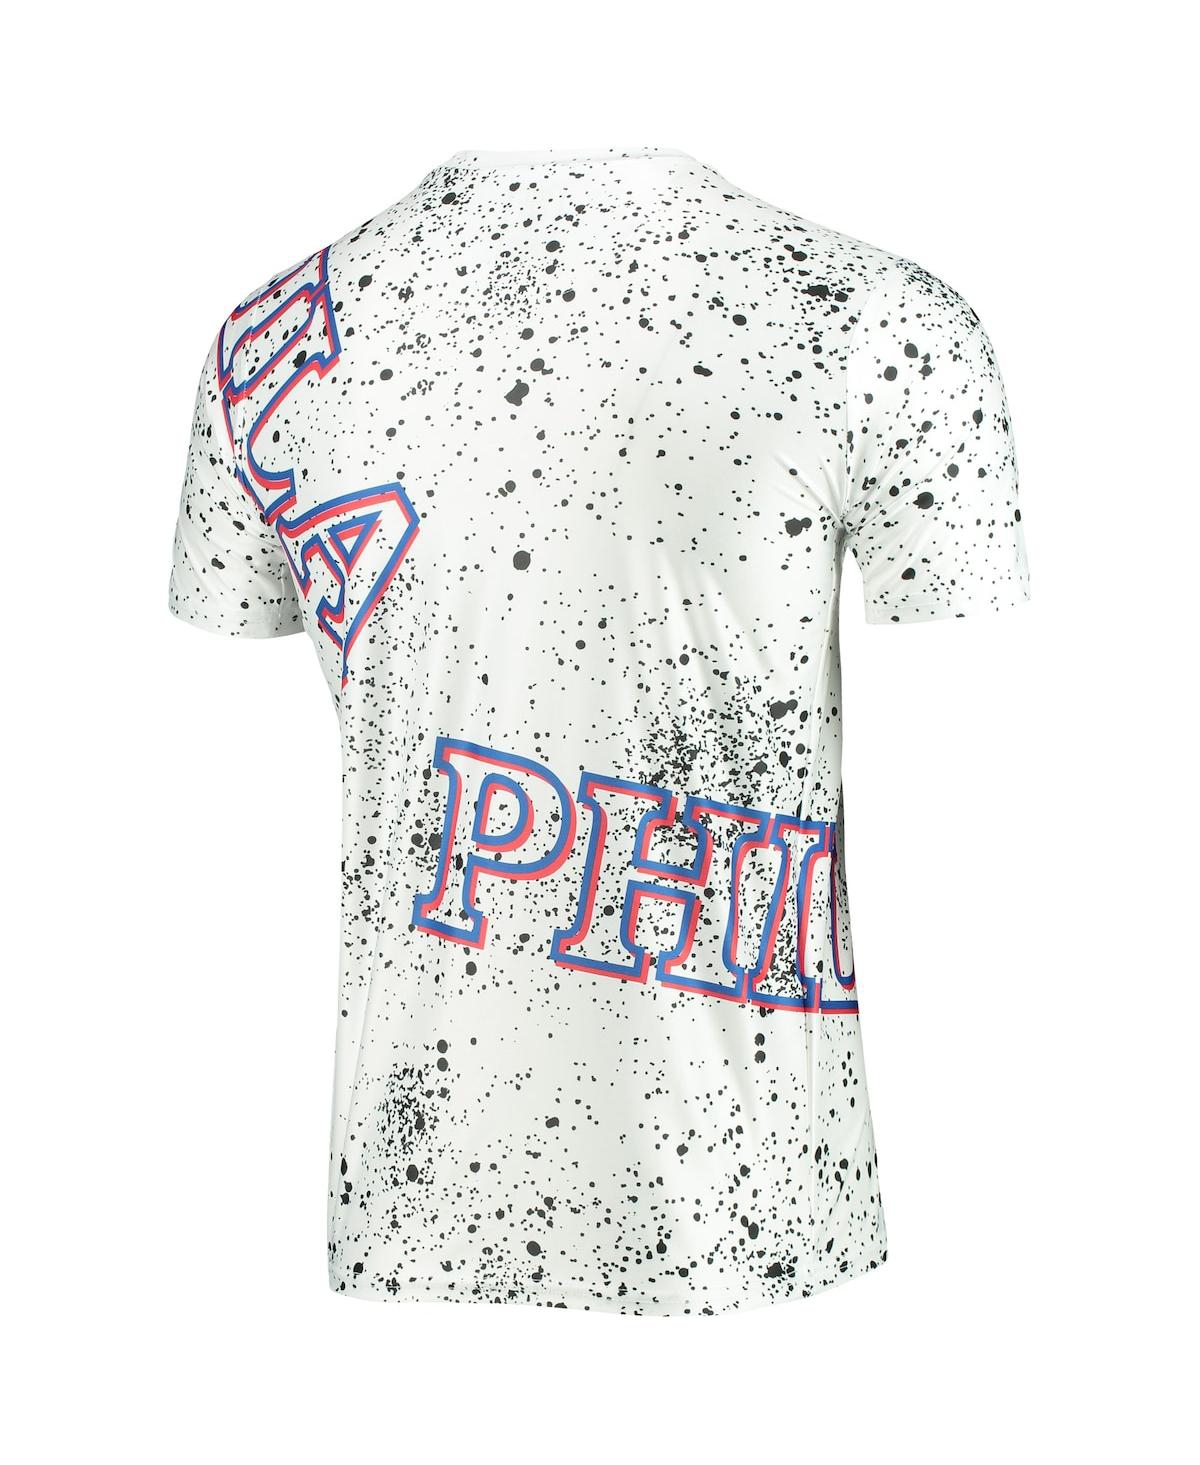 Shop Fisll Men's White Philadelphia 76ers Gold Foil Splatter Print T-shirt